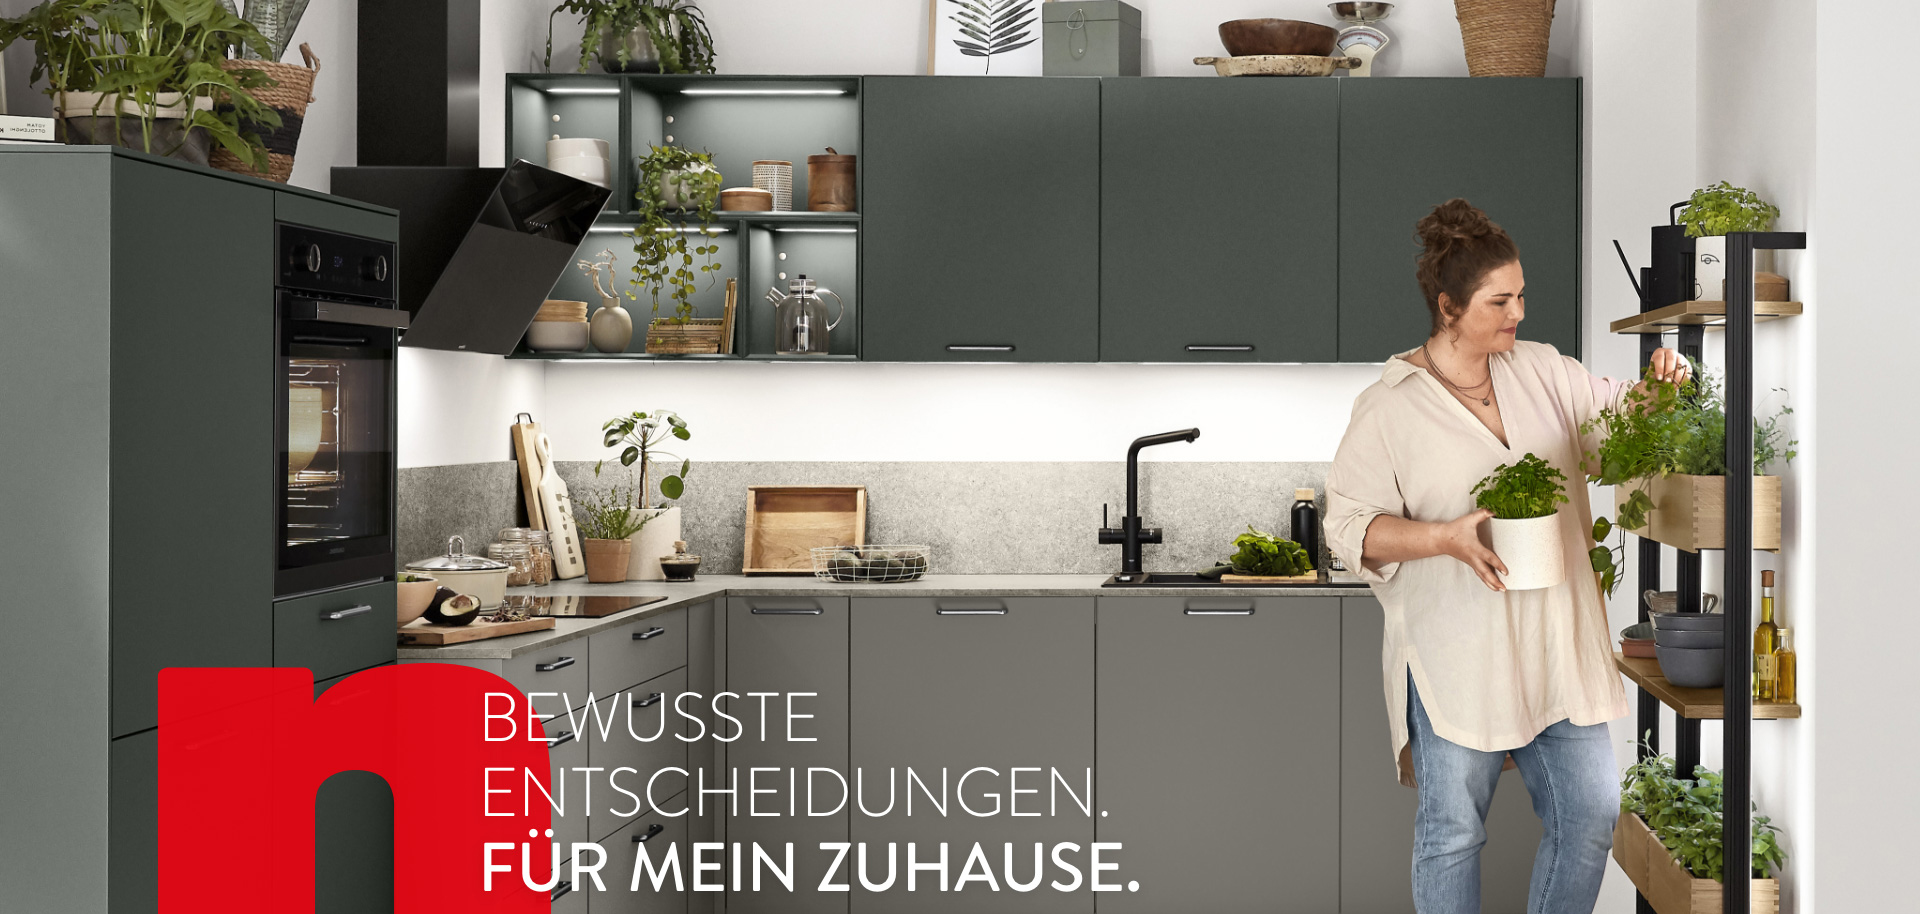 Moderne Küchenszene mit einer Frau, die Kräuter organisiert, zeigt elegante Geräte und Schränke mit der Botschaft "Bewusste Entscheidungen für mein Zuhause".